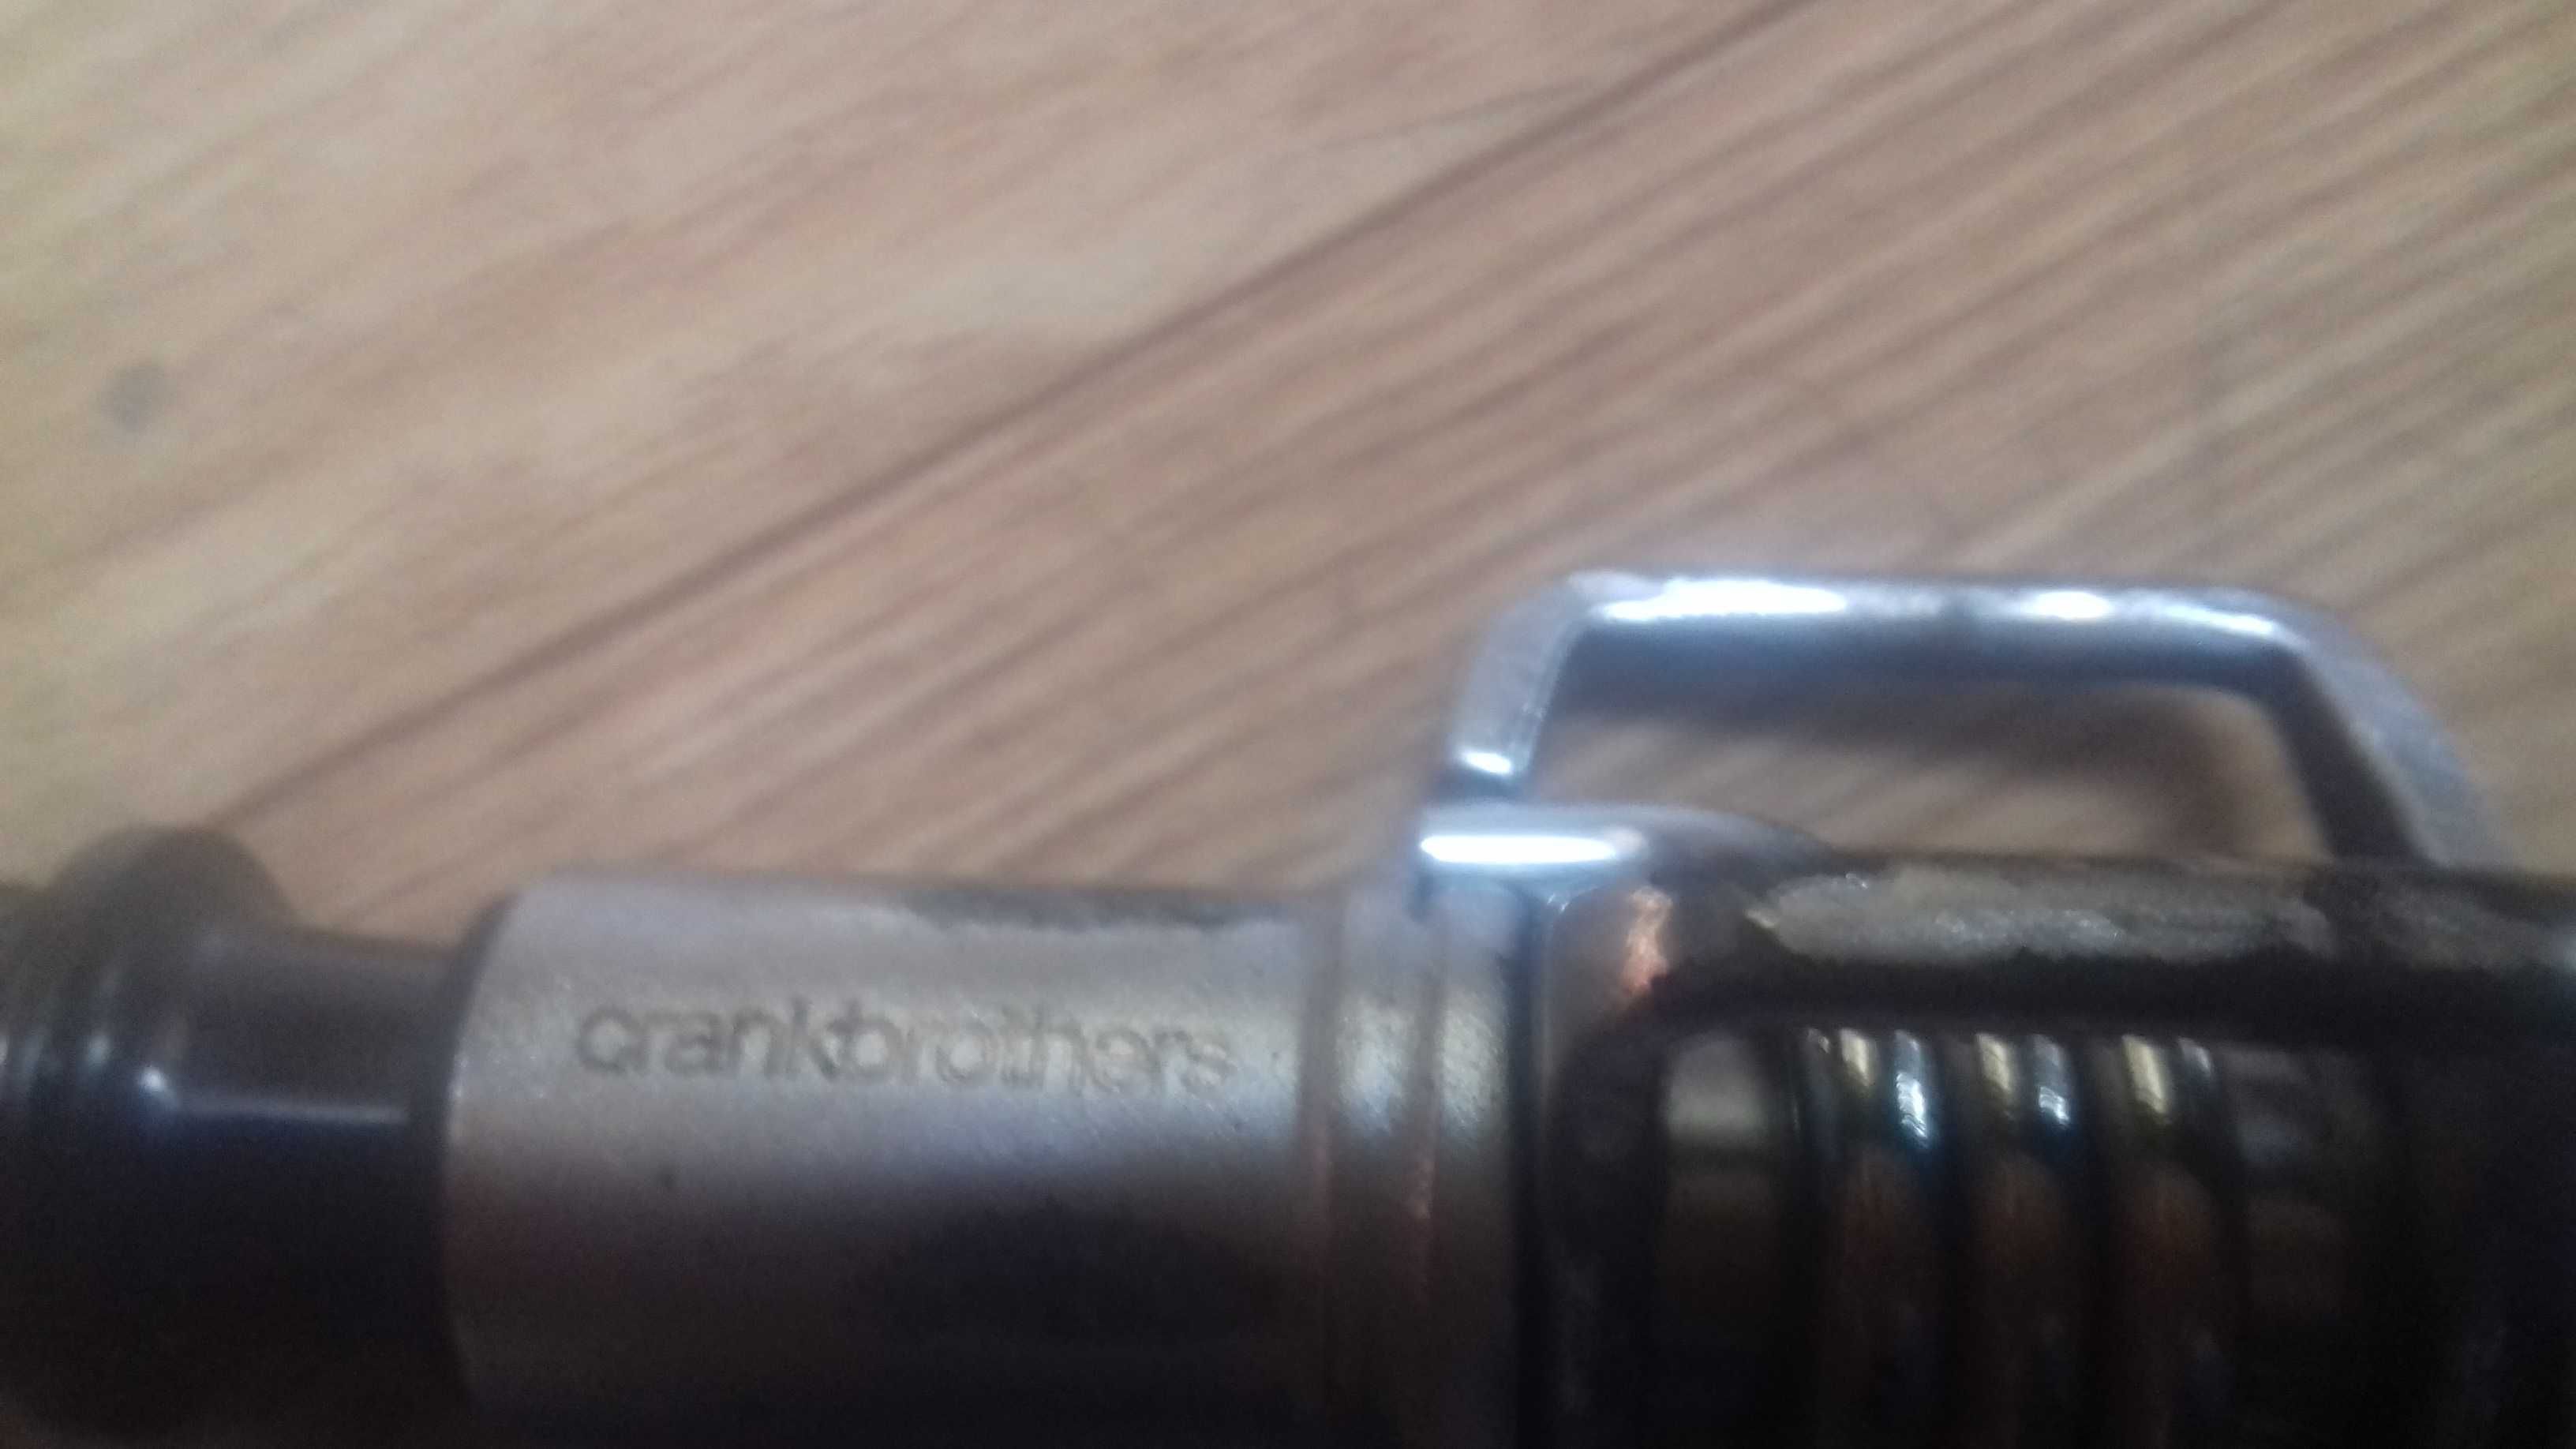 Педалі Crankbrothers EGGBEATER 1 silver. б/у